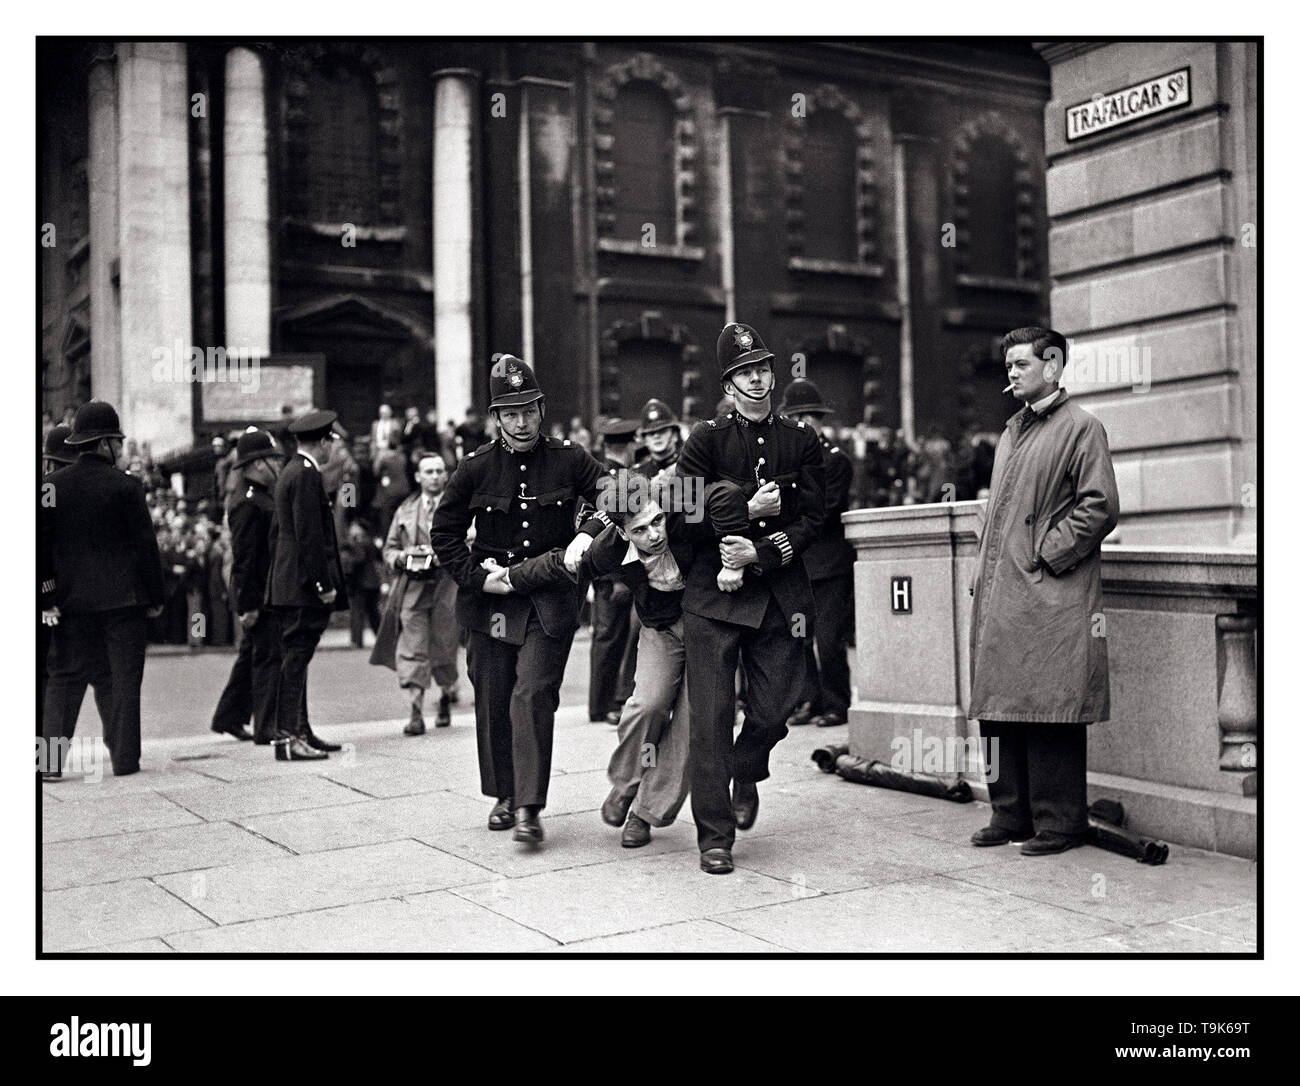 Vintage B&W news Bild der Demonstrator kämpfen mit der Polizei wie der Britischen Union der Faschisten von Kentish Town, geführt von Sir Oswald Mosley Parade und März in London während der lokalen Wahlen Sonntag, Juli 4, 1937 Trafalgar Square London, Großbritannien Stockfoto